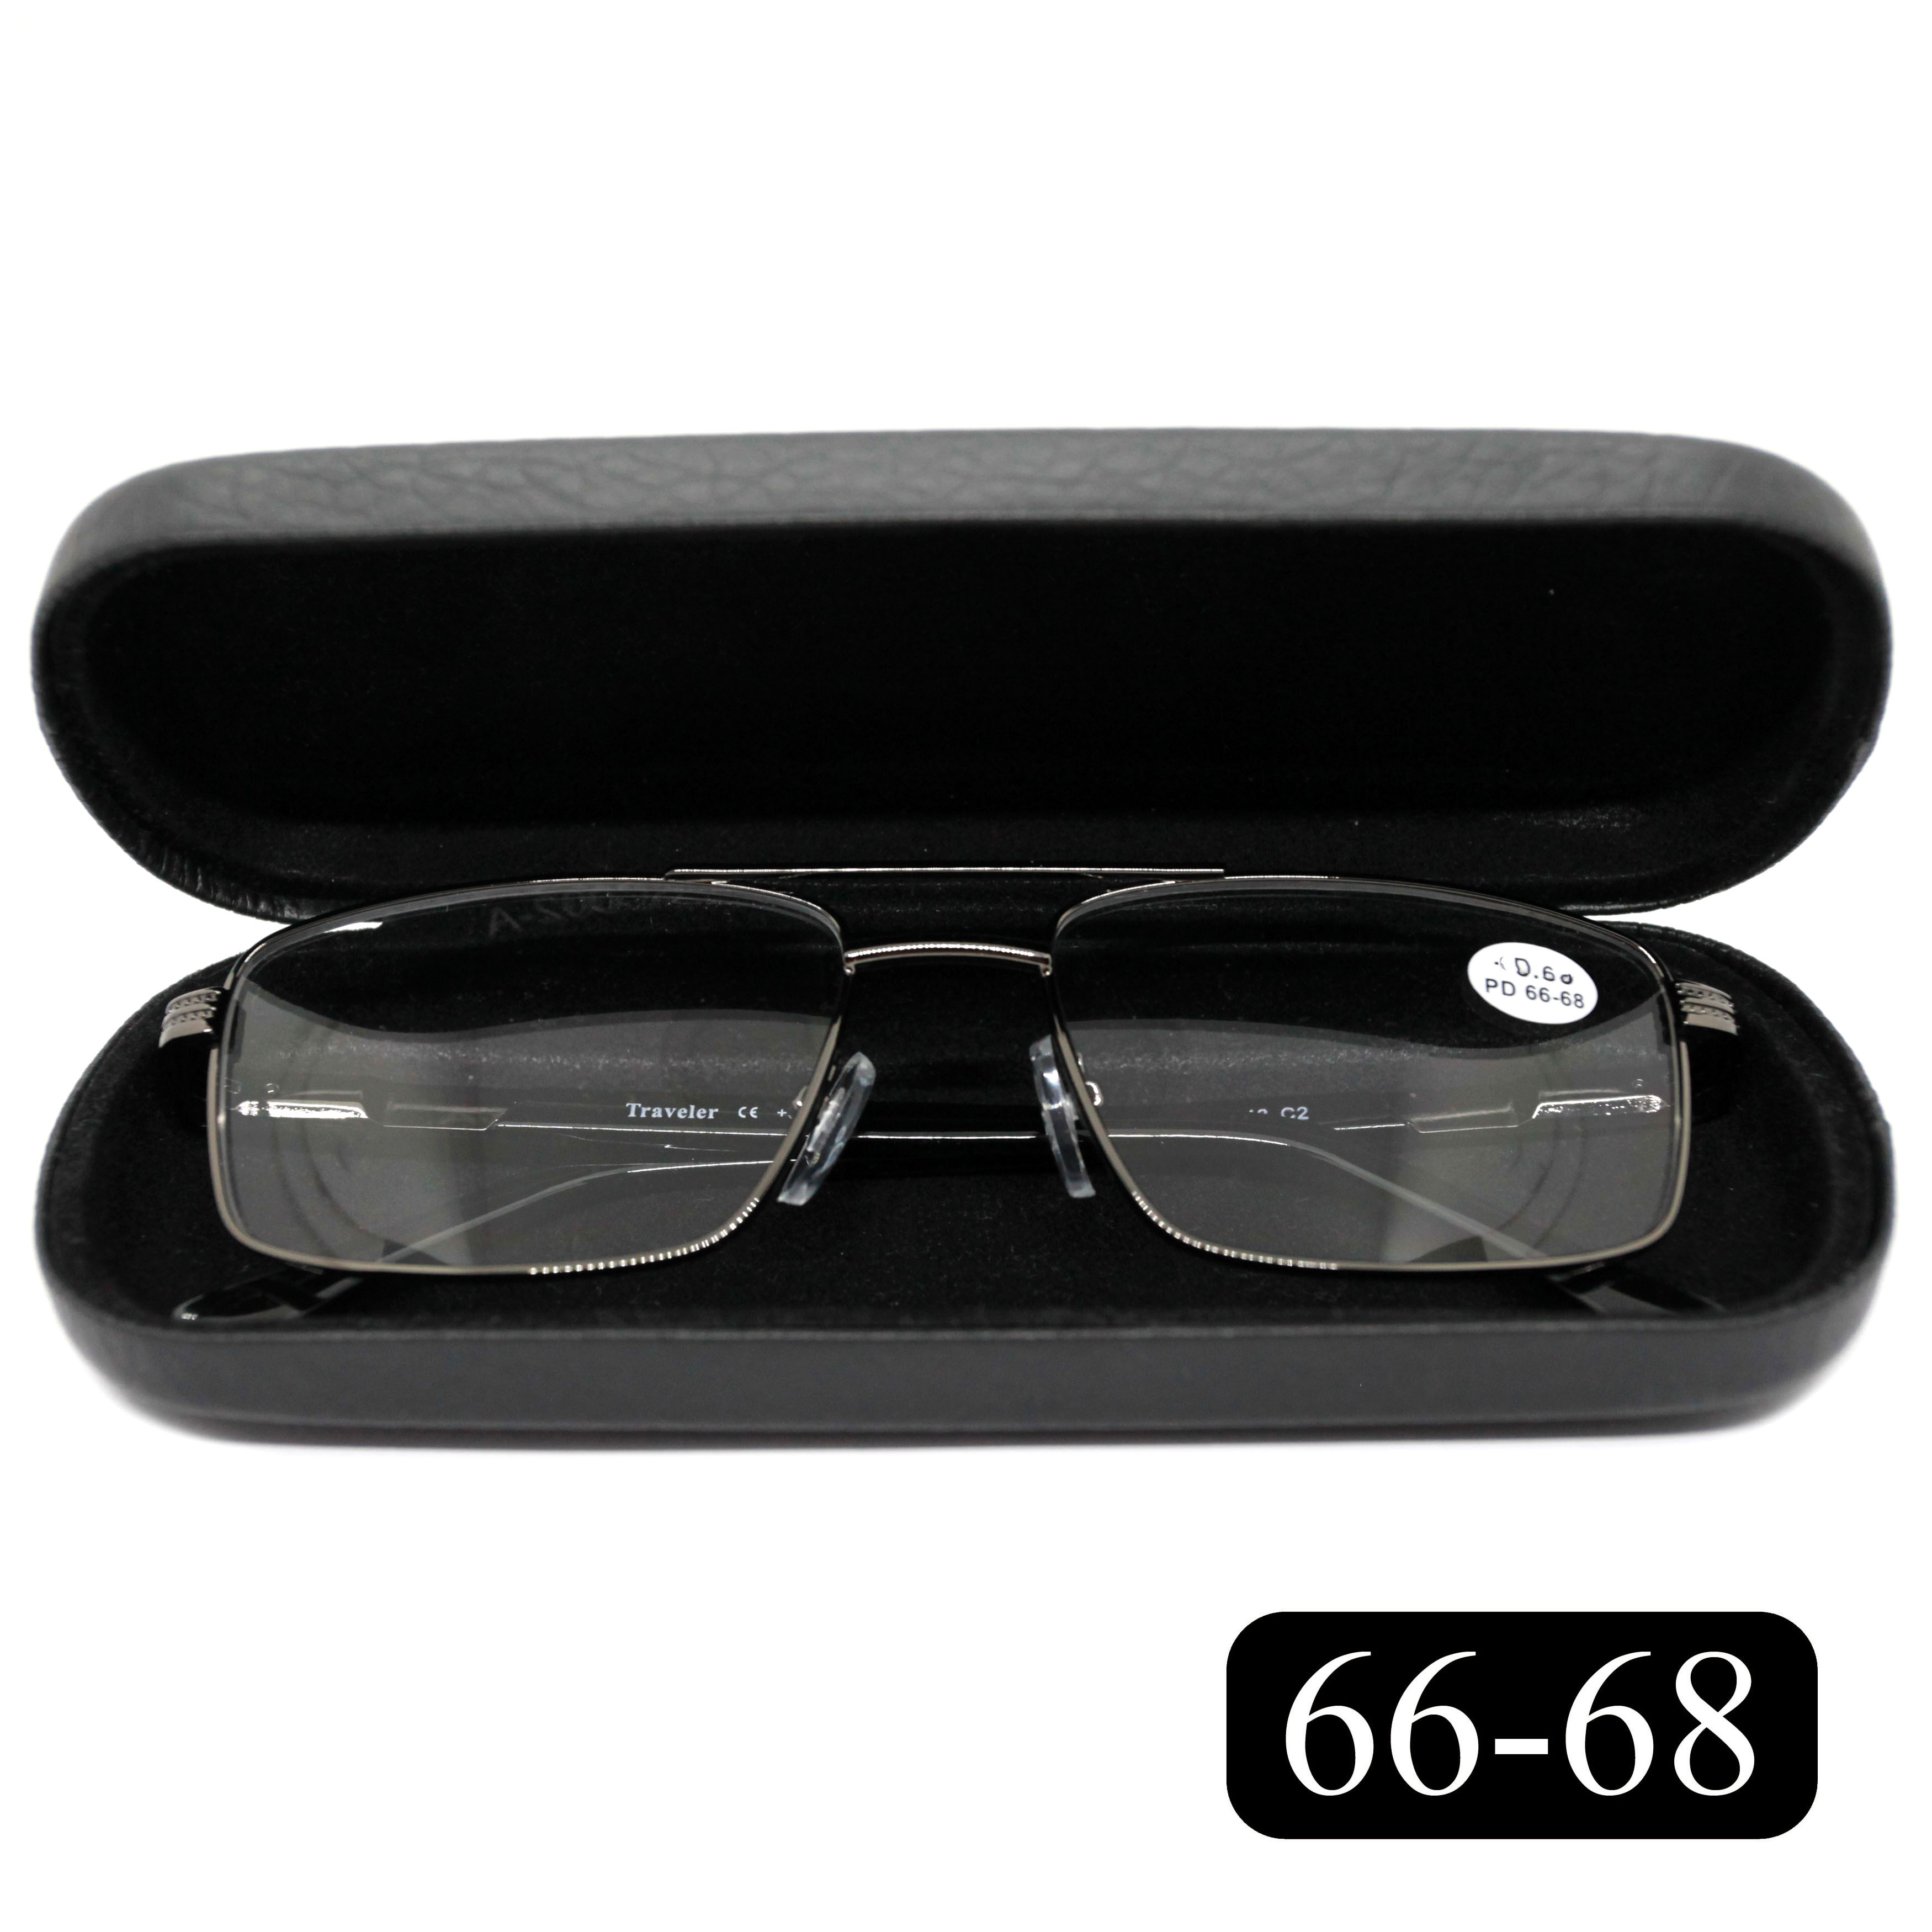 Готовые очки для чтения Traveler 8020 +1.50, c футляром, цвет серый, РЦ 66-68